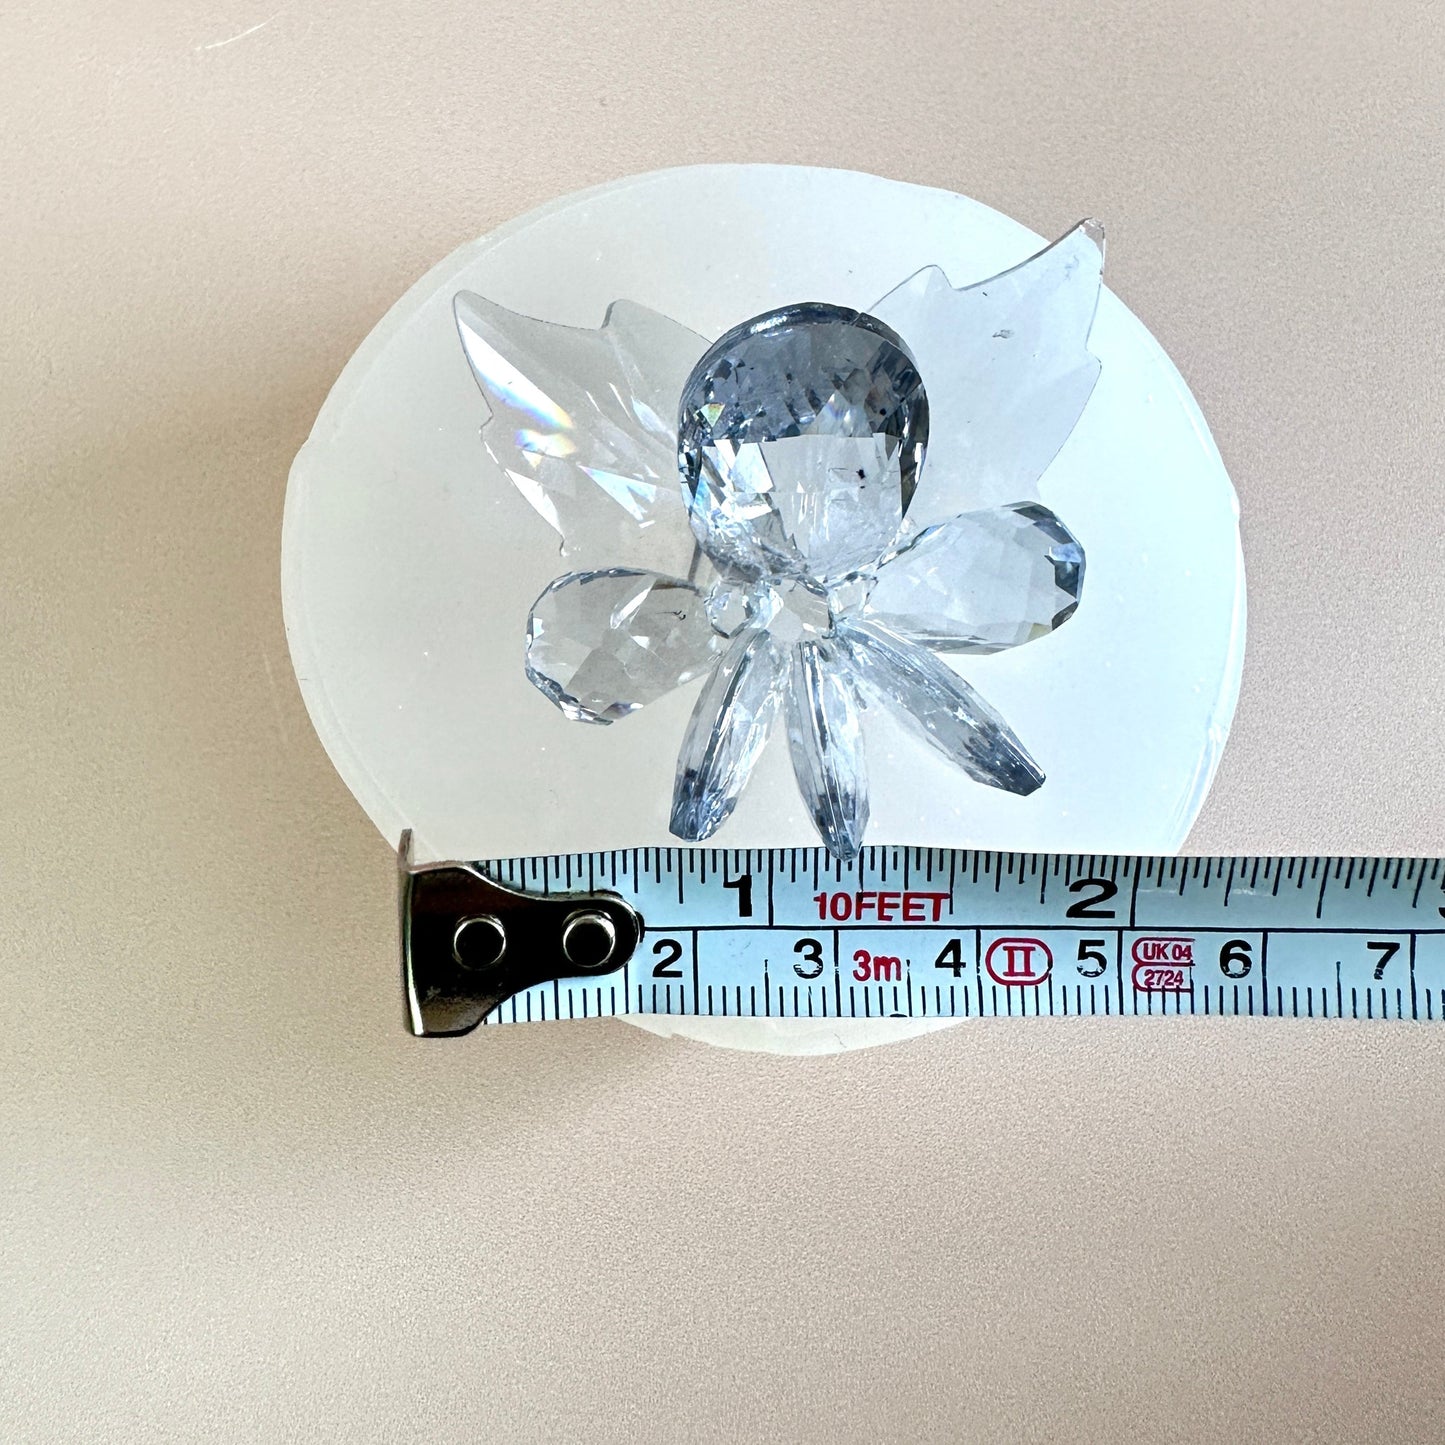 Wir stellen Ihnen die faszinierende Brillanz vor: Innovative Silikonform im Kristalldesign